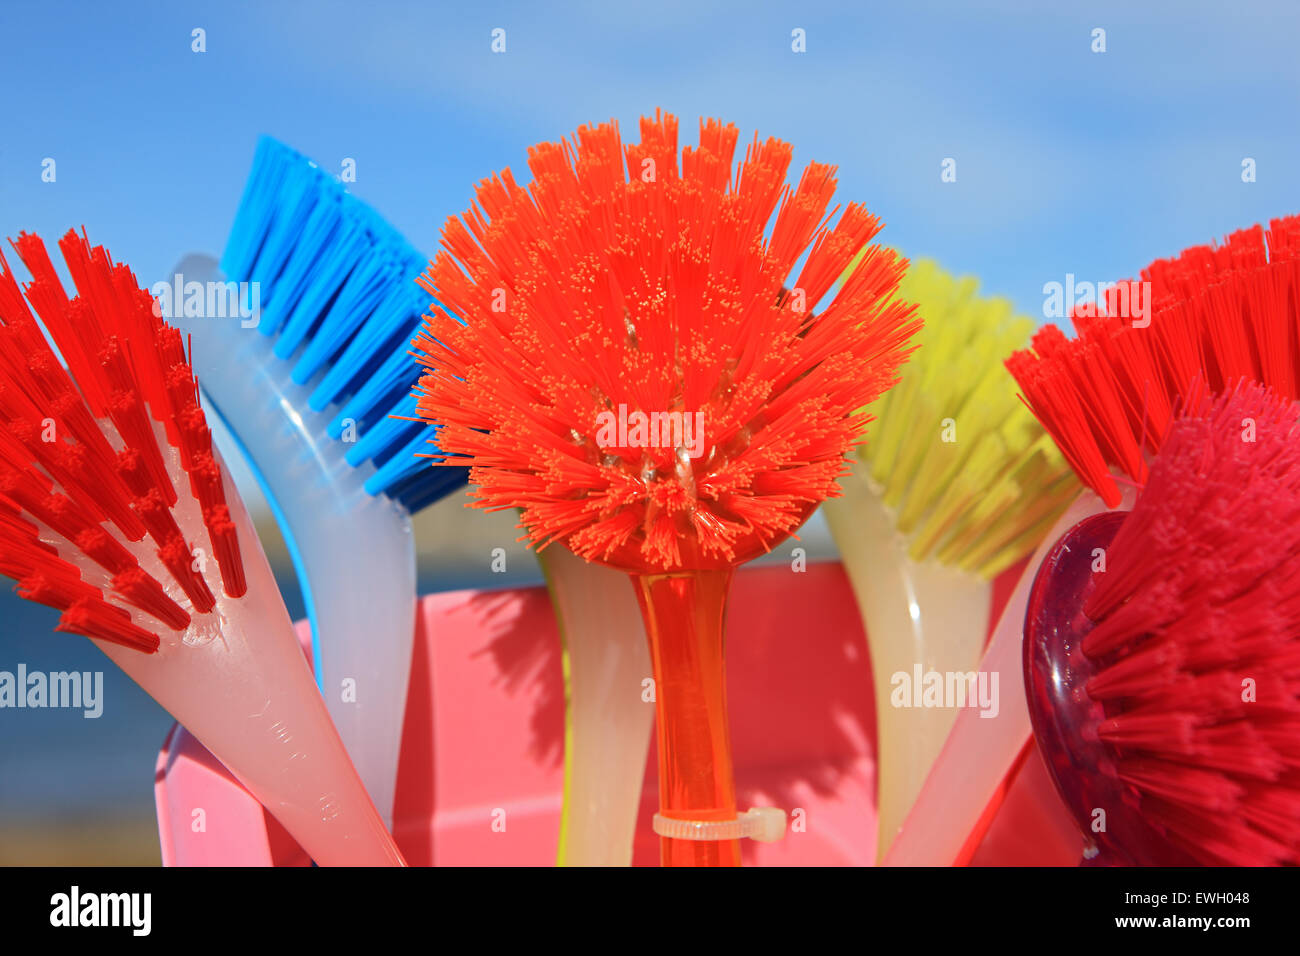 Brightly coloured dish washing brushes Stock Photo